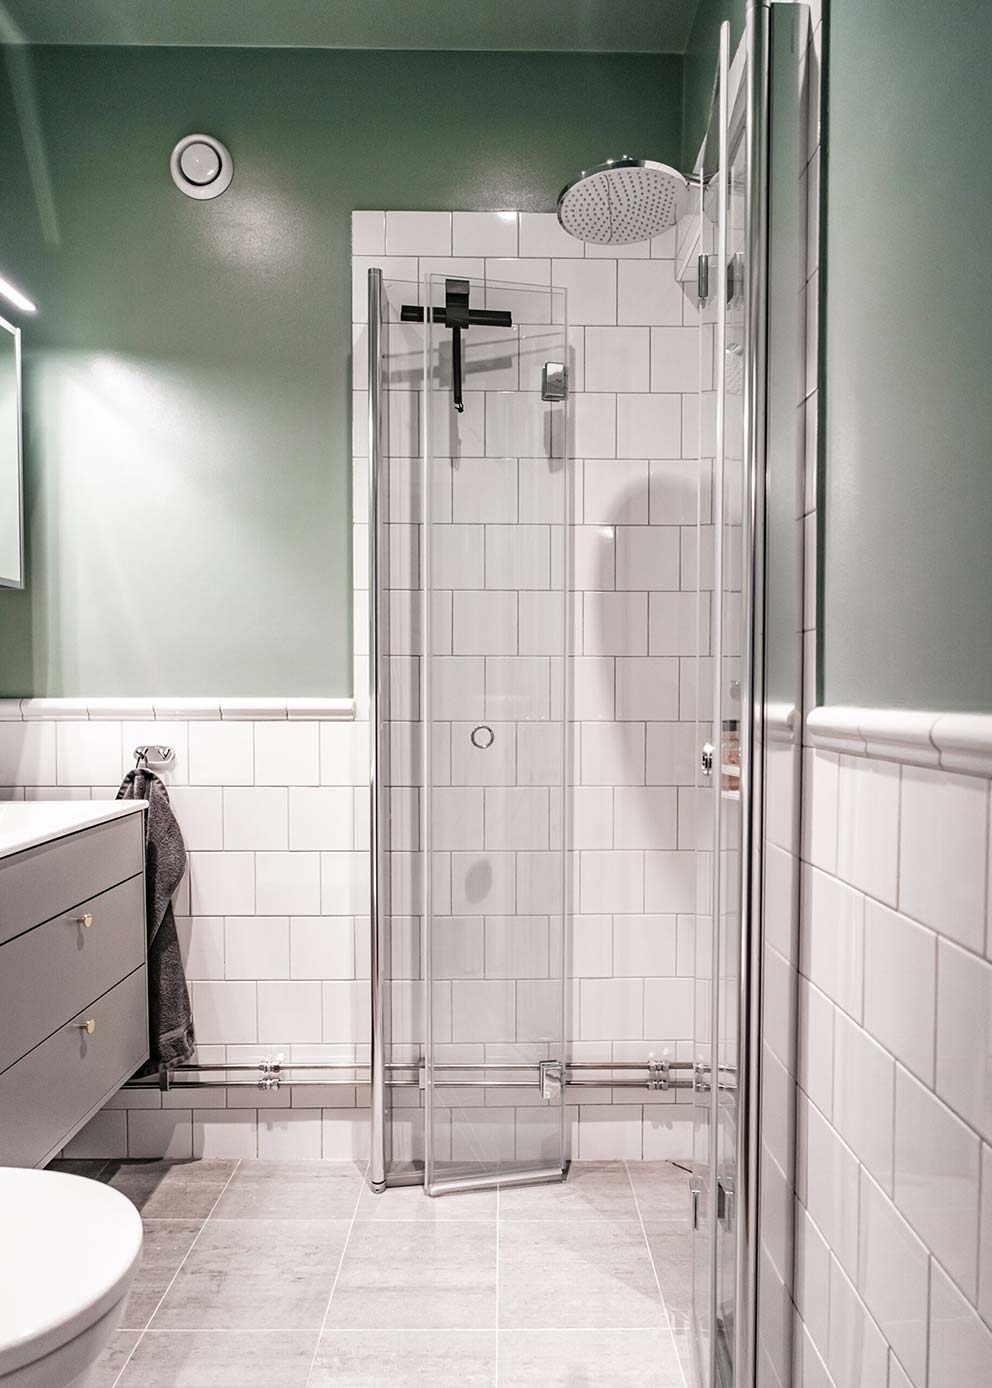 Modernt renoverat badrum med ljusgröna väggar, vitt kakel, ljusgrå klinkers, en dusch med ett vattenfallsmunstycke och modern belysning